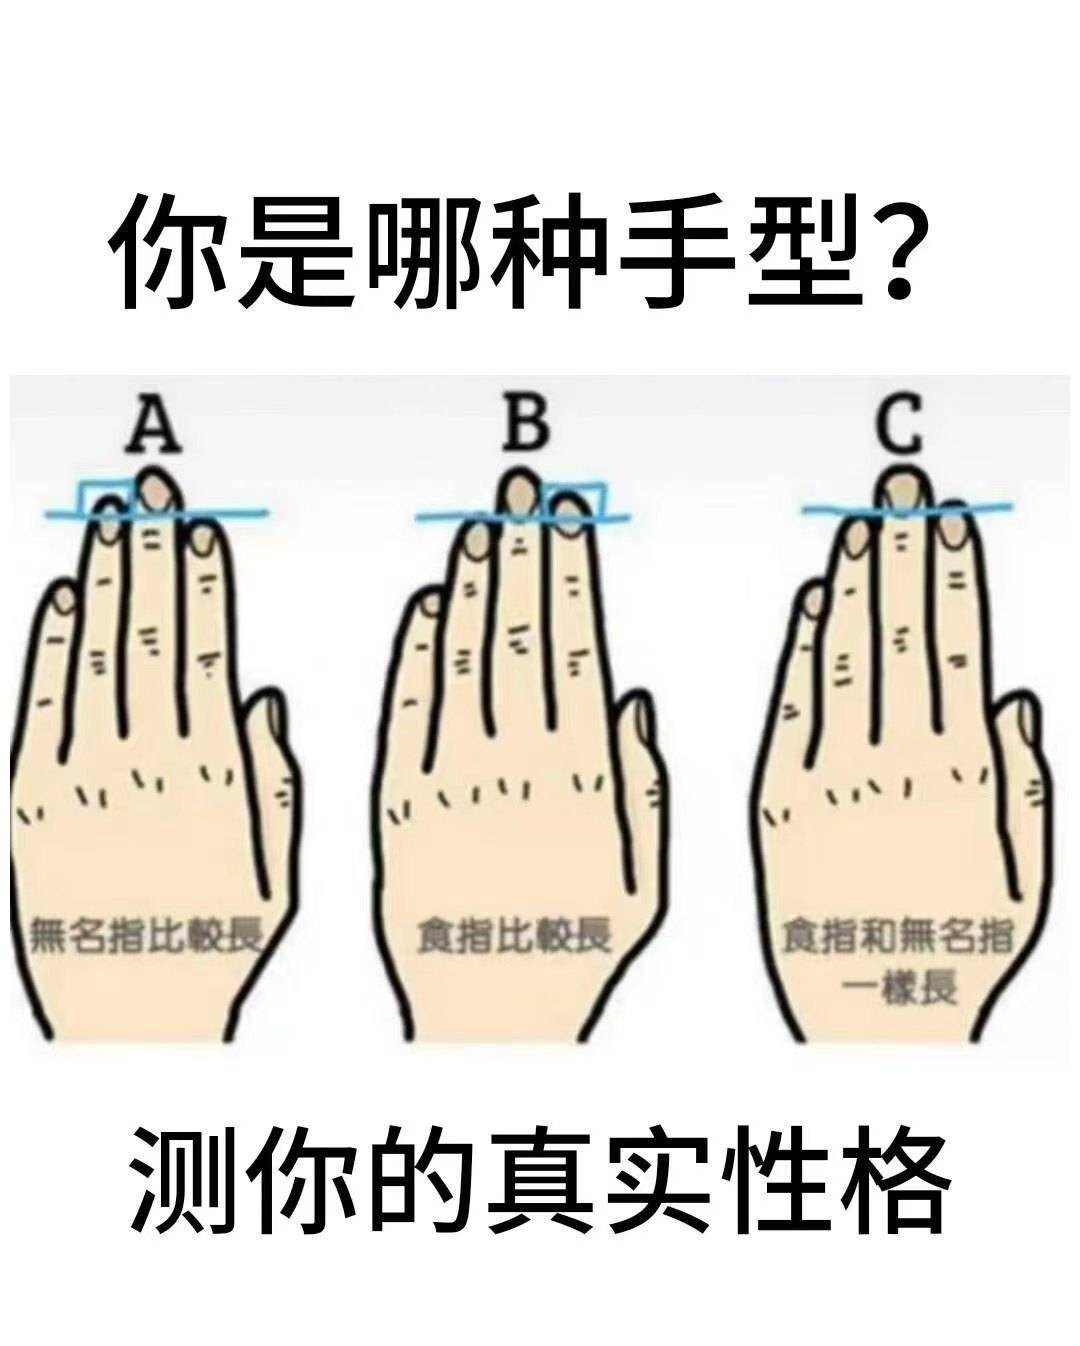 食指手势素材-食指手势图片-食指手势素材图片下载-觅知网